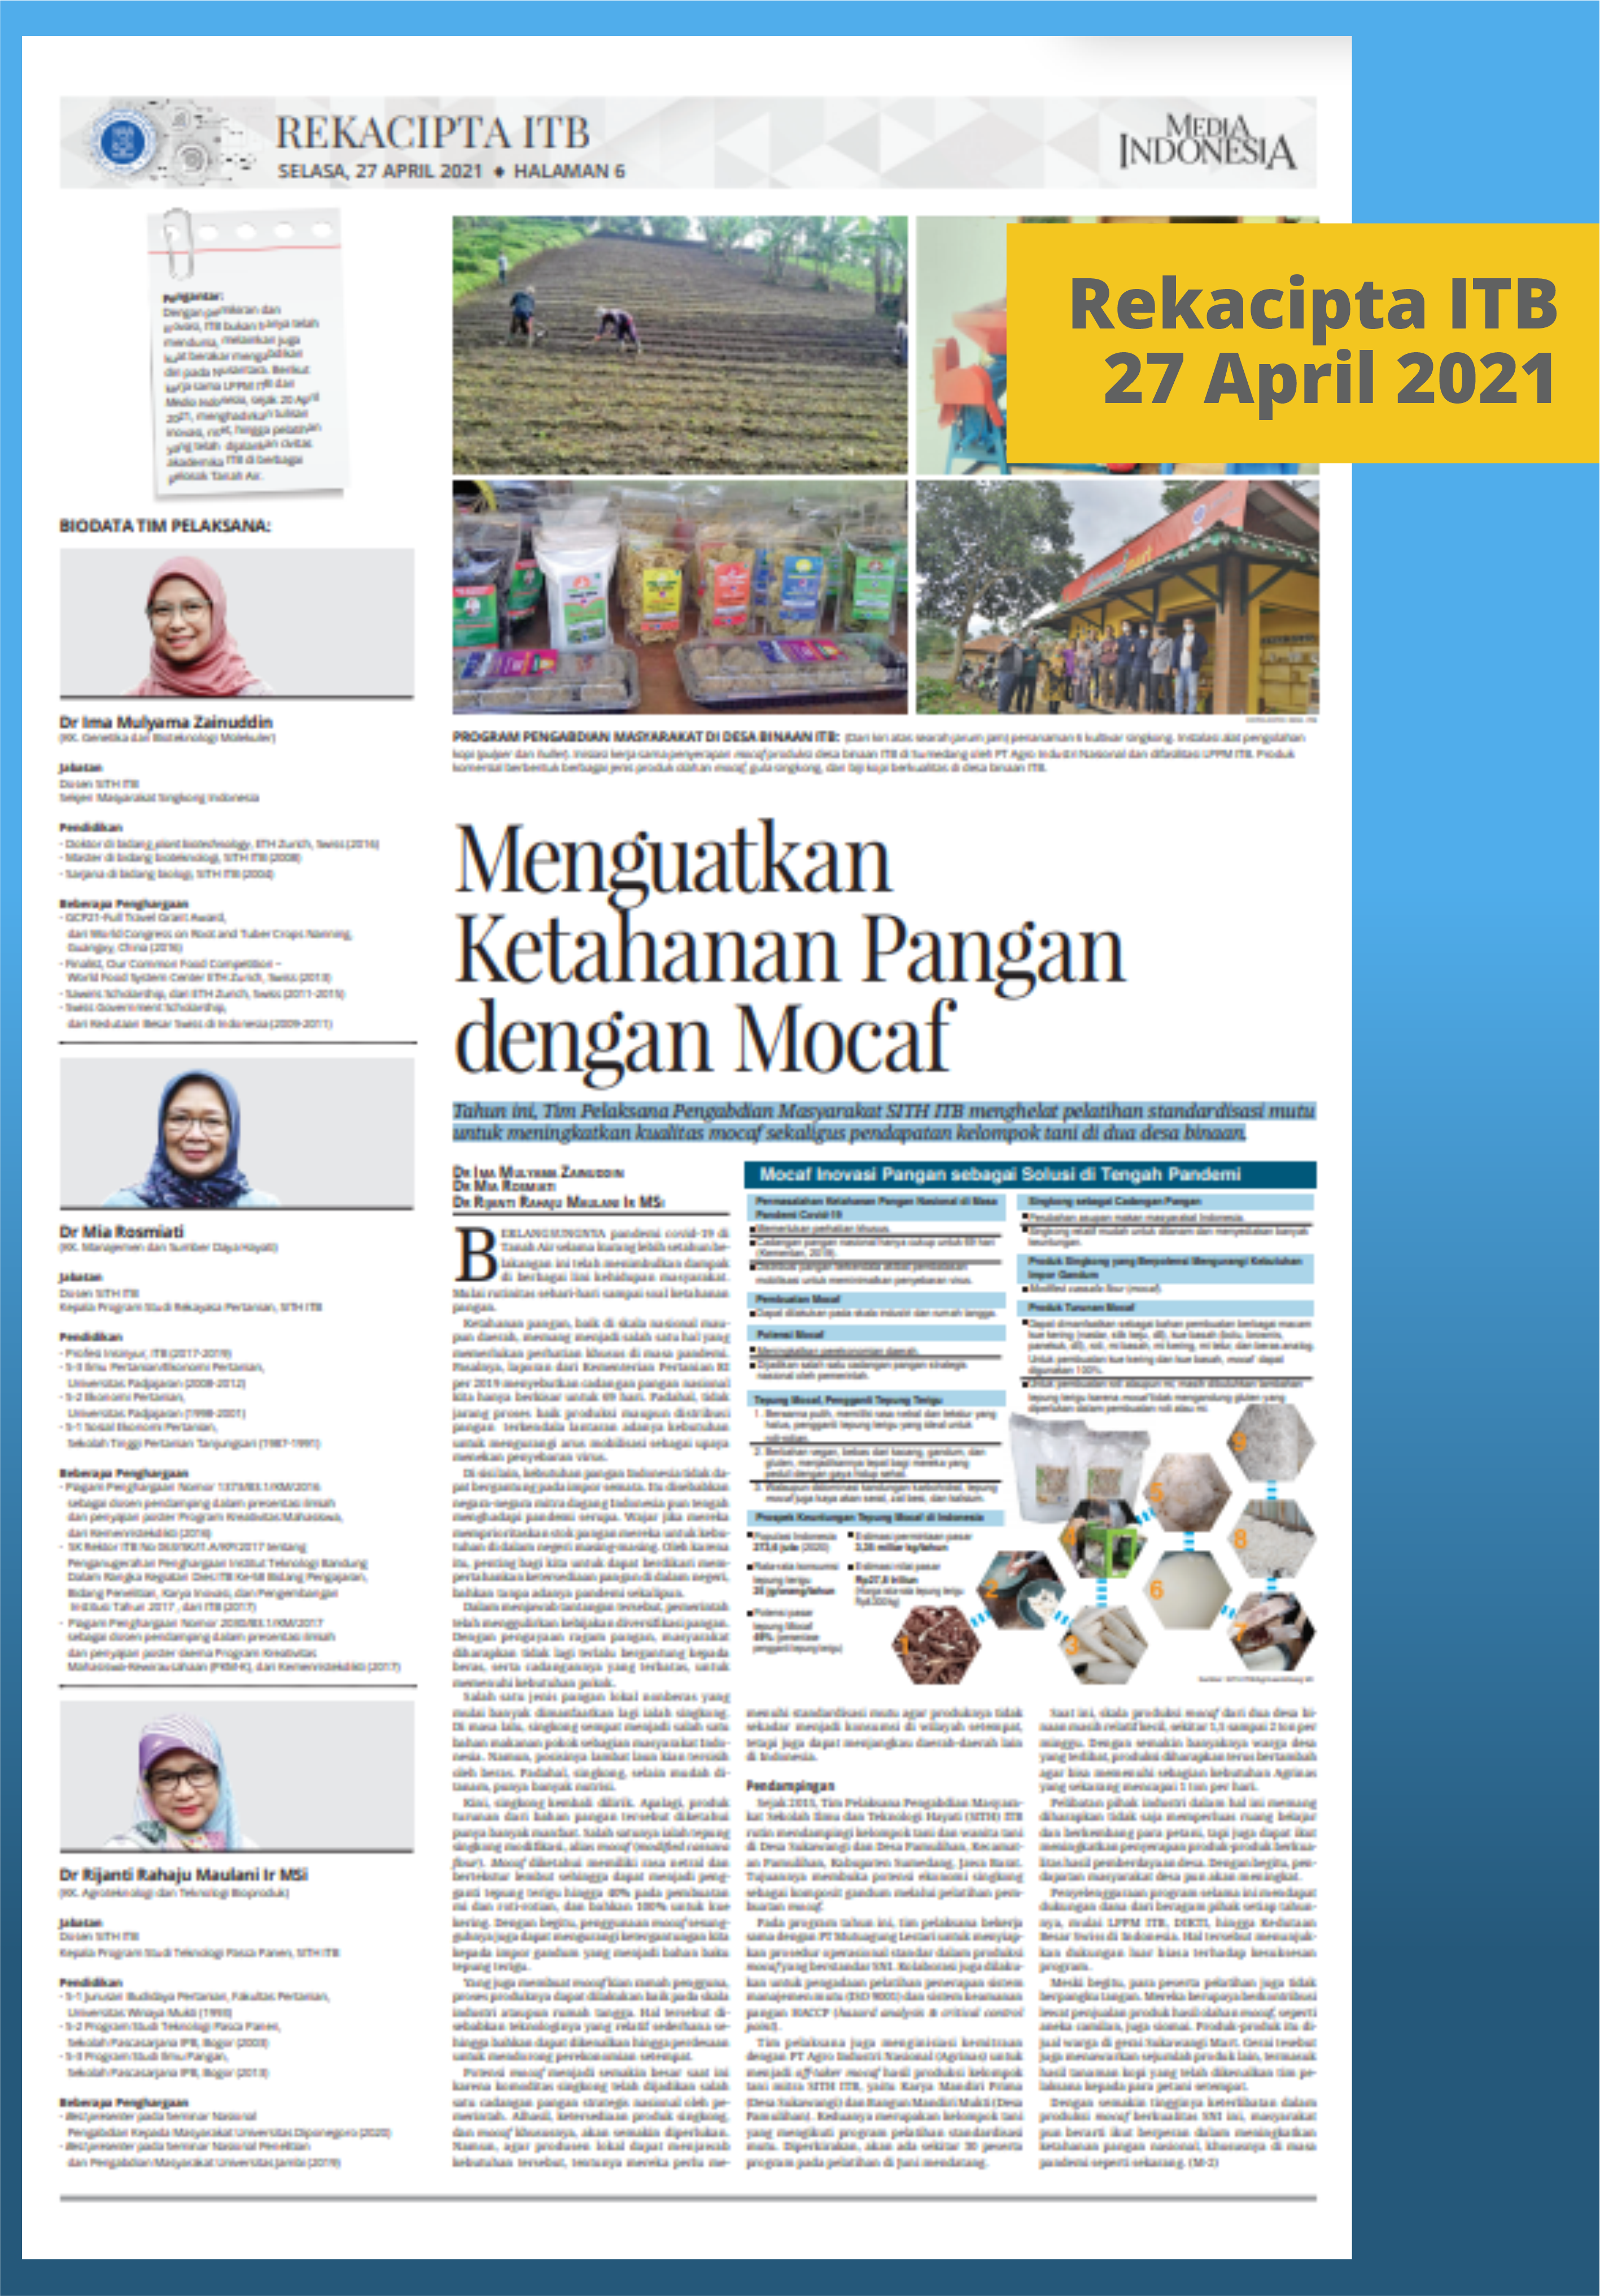 Rekacipta ITB Edisi 27 April 2021 - Media Indonesia